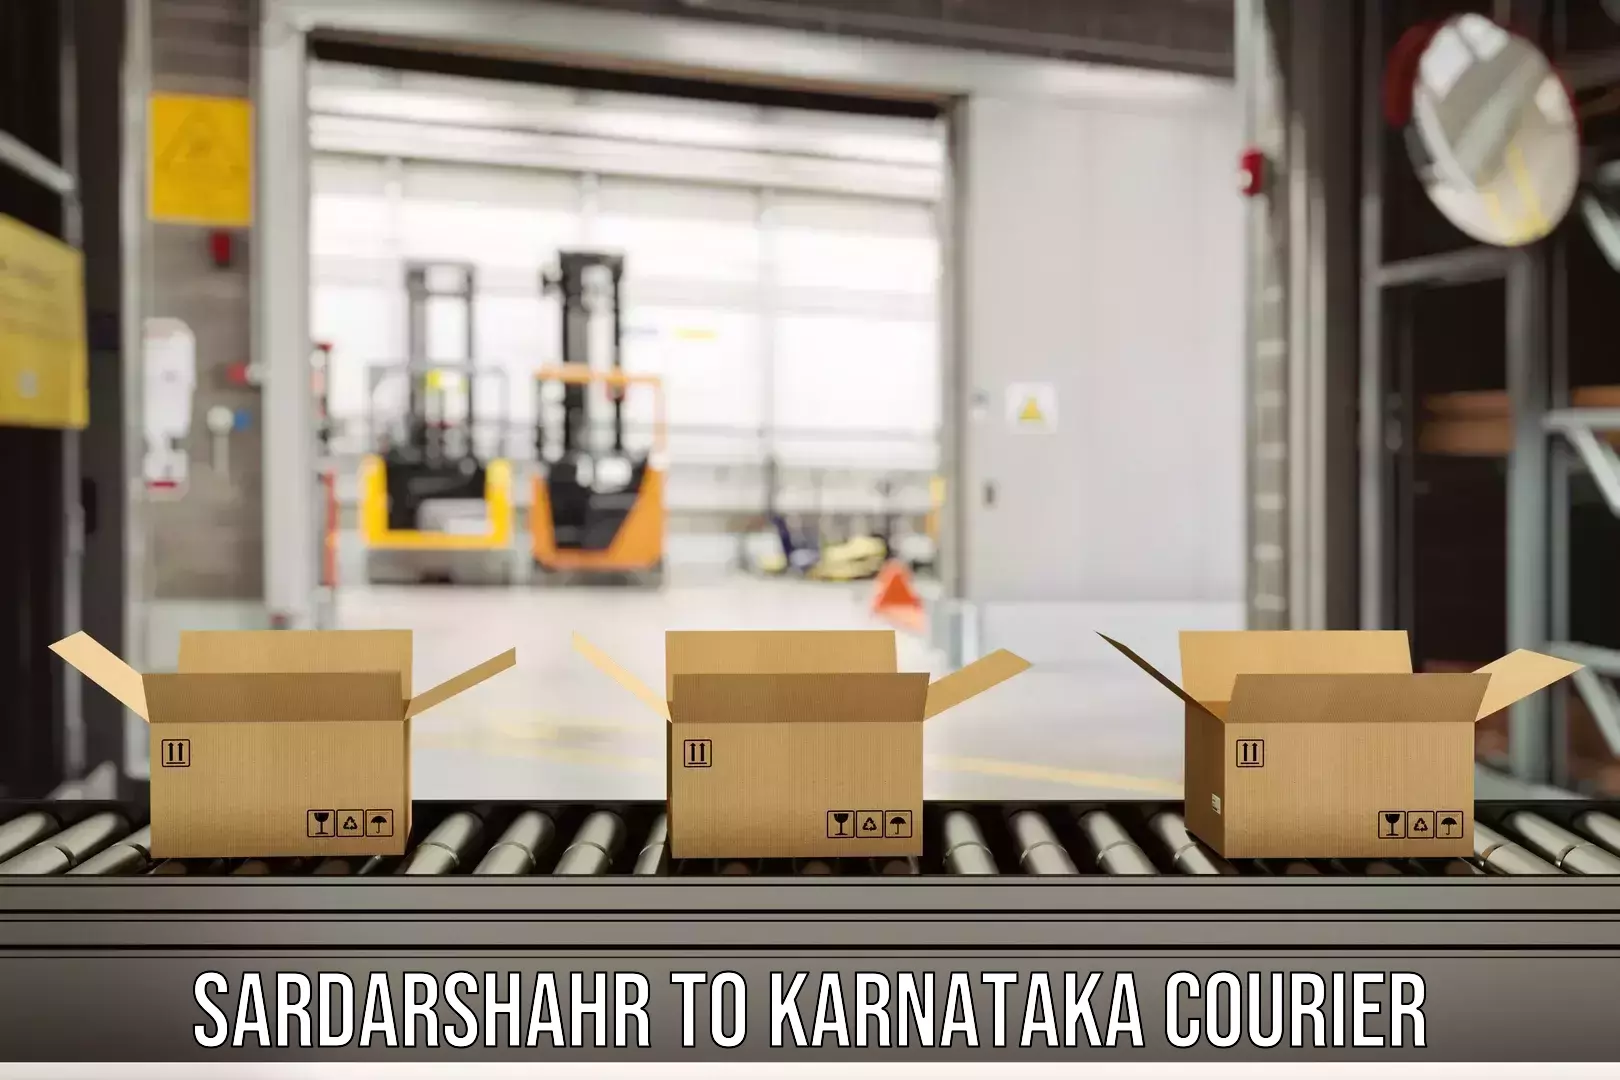 Express delivery capabilities Sardarshahr to Dakshina Kannada